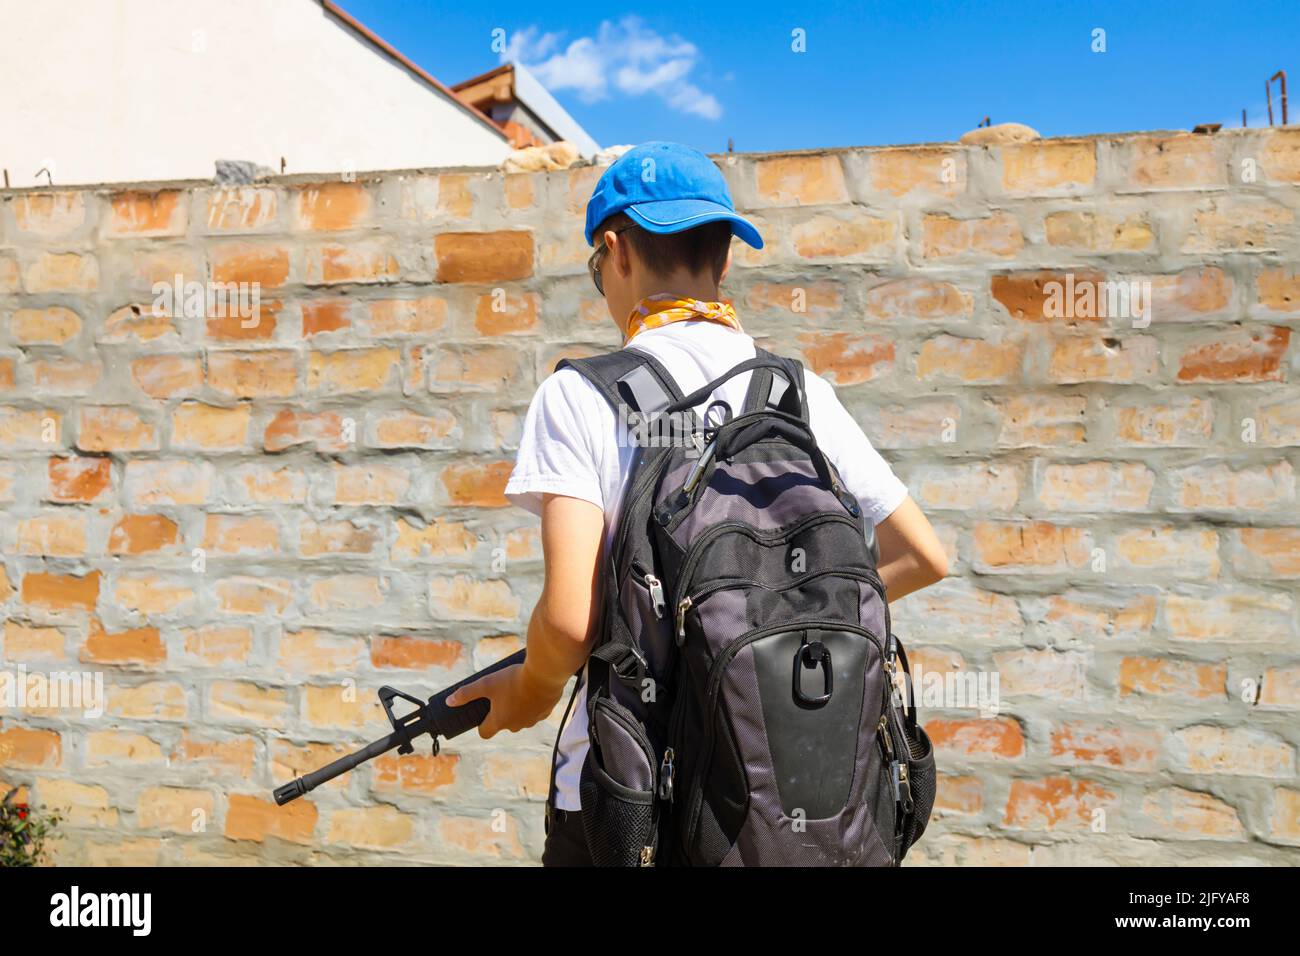 Yong Mann zu Fuß mit einem automatischen Gewehr-Gun-Steuerung, Schule Schießereien Konzept. Stockfoto